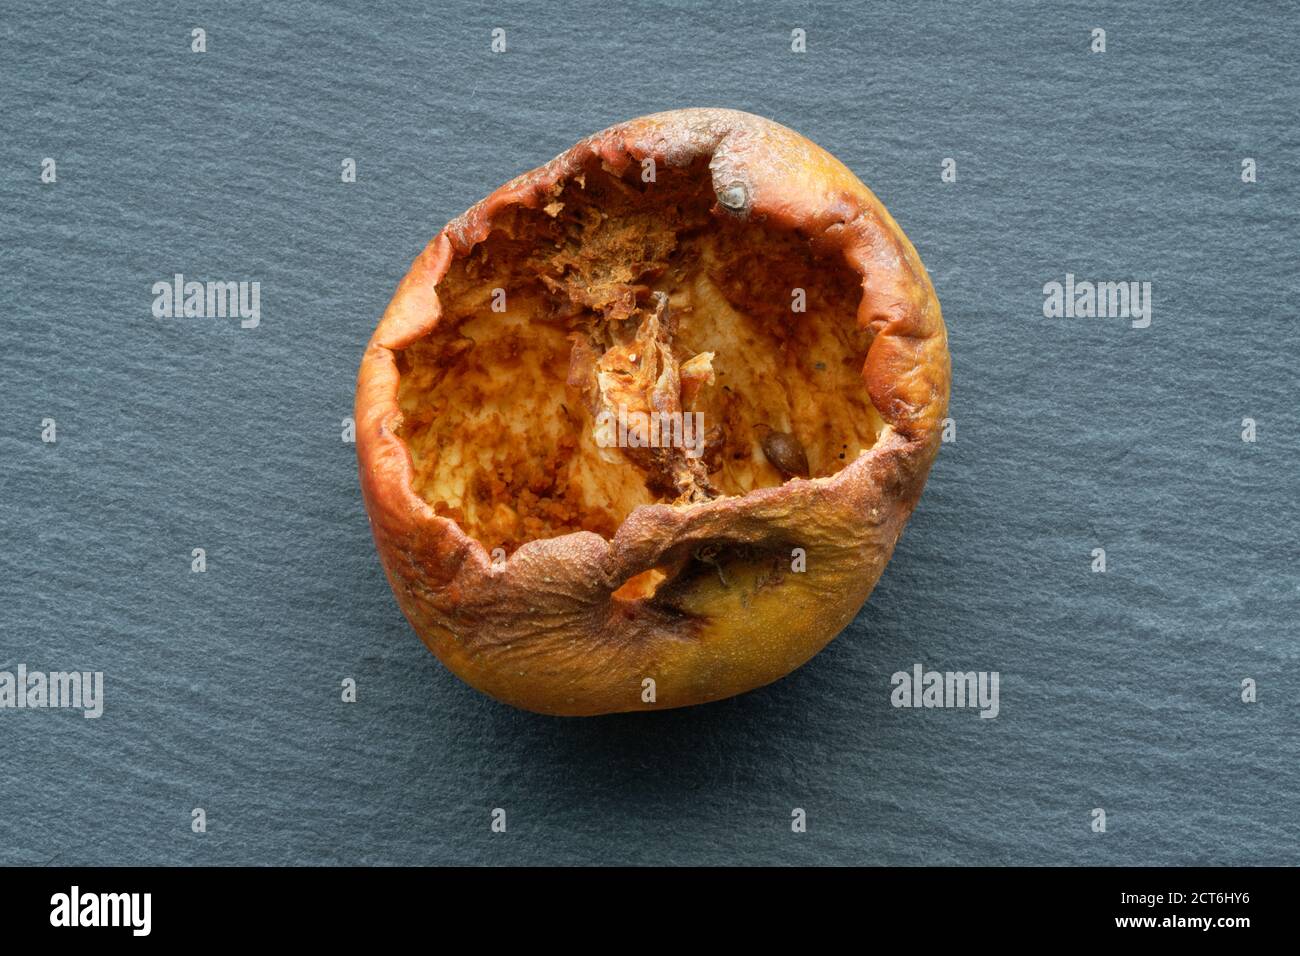 Ein Apfel, der von Insekten bis in den Kern gefressen wird. Ein Studiobild eines gepflückten Apfels, der vom Insektenleben verwüstet wurde. Das Einstiegsloch ist oben zu sehen. Stockfoto